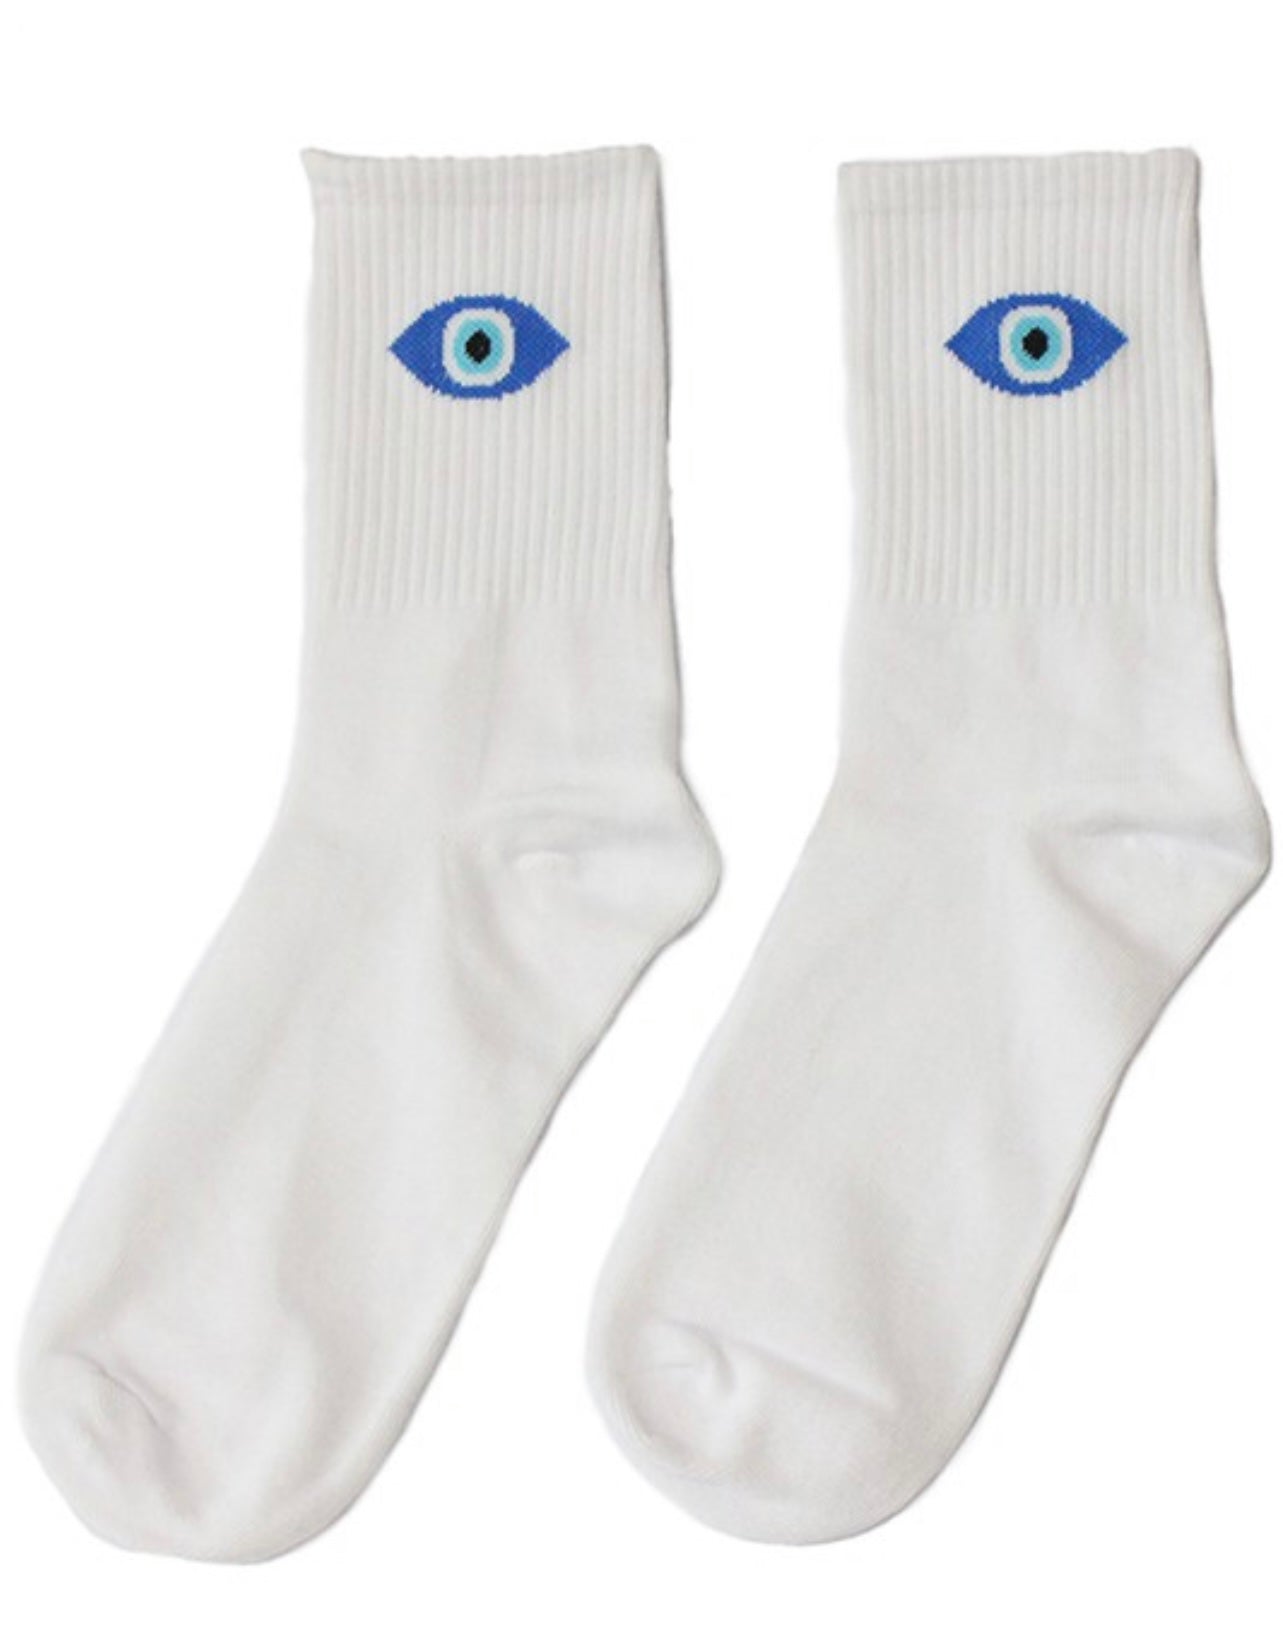 white socks, evil eye socks,